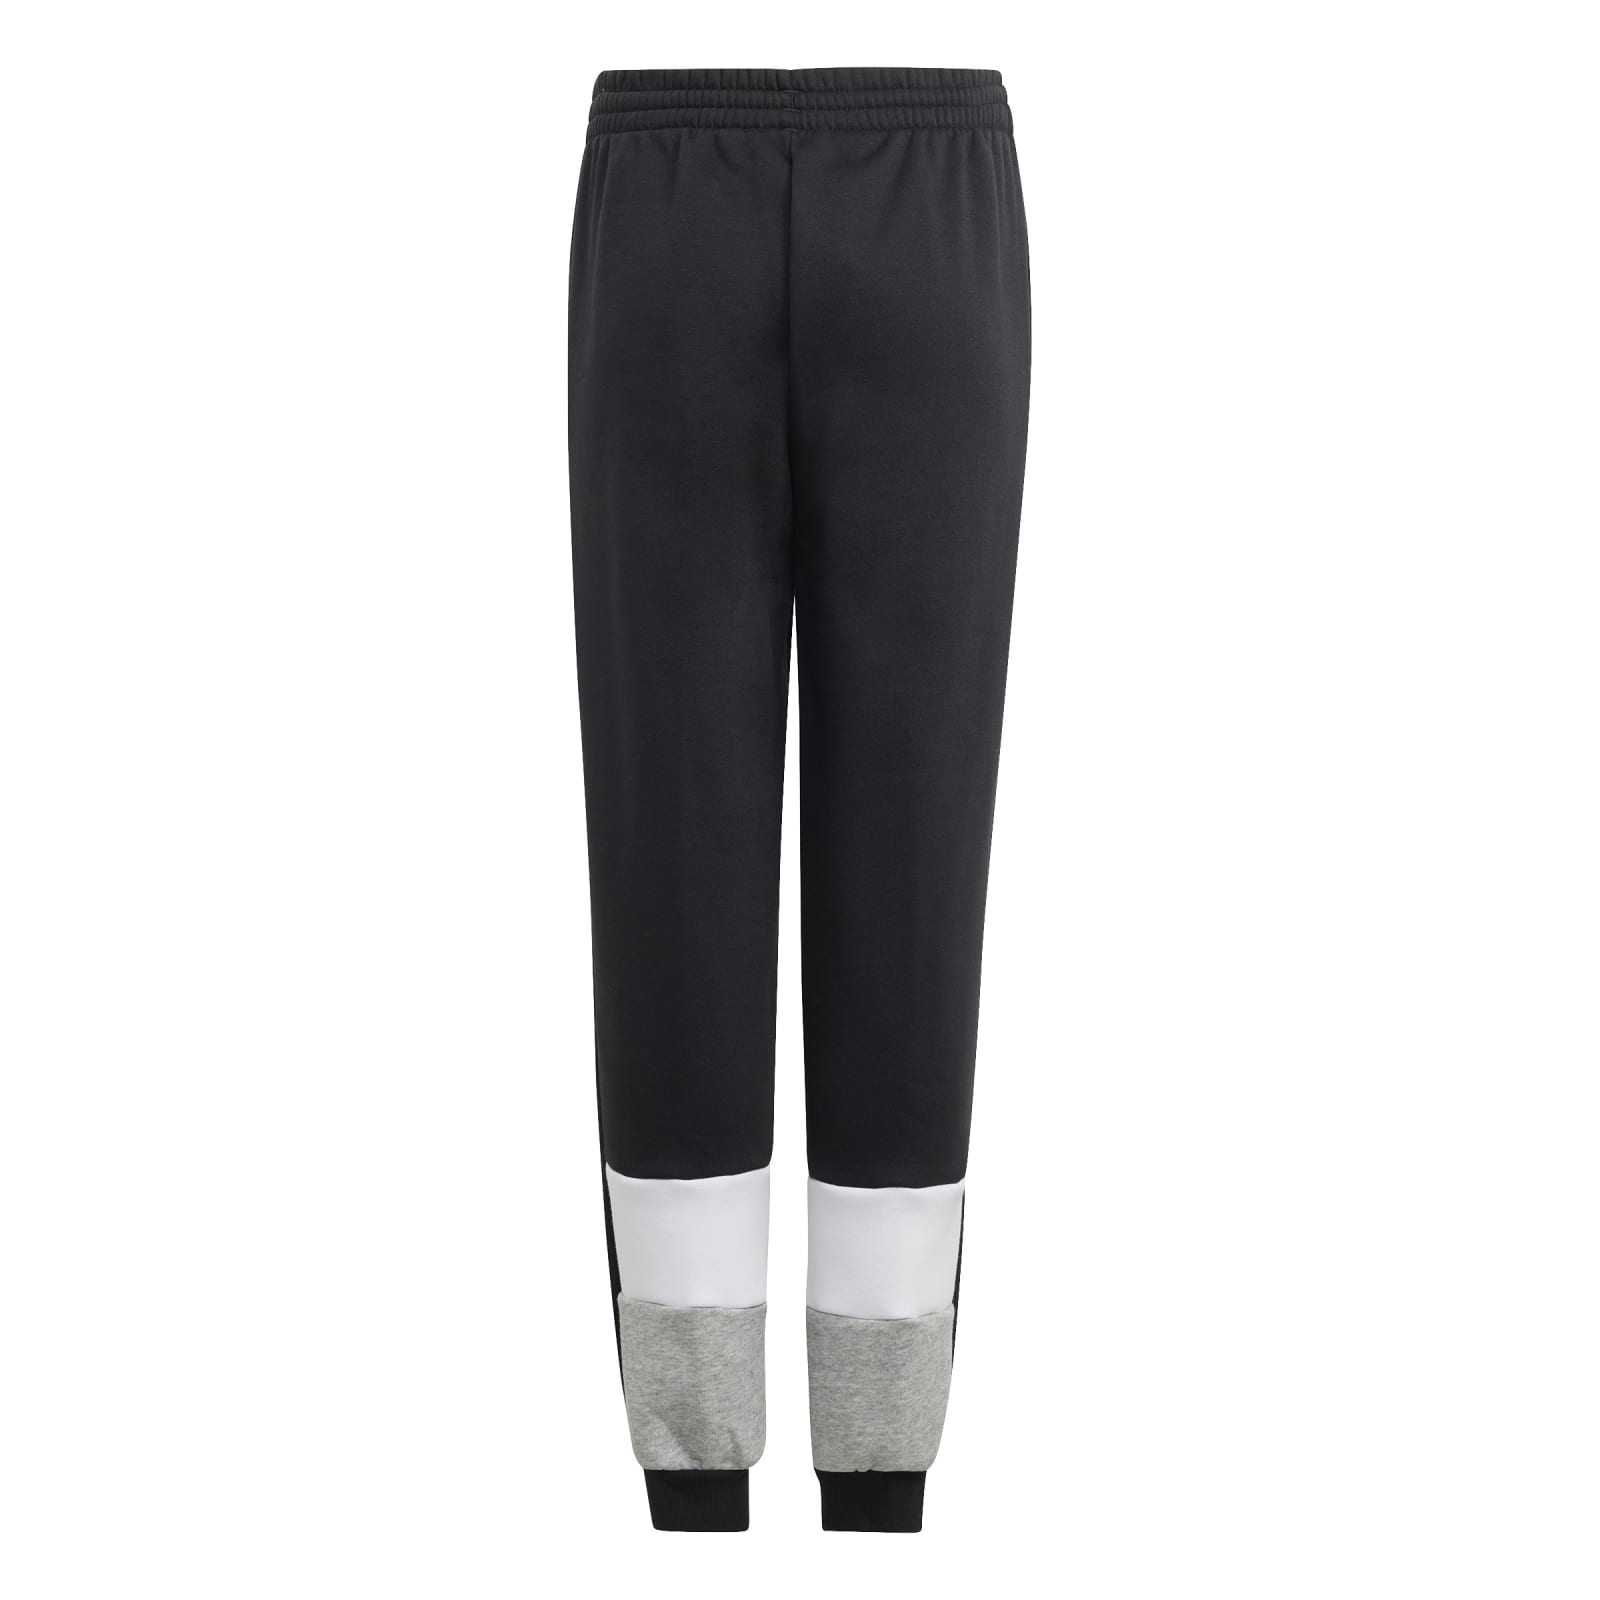 Ermäßigung adidas Trainingsanzug (Baumwollmix) online Fleece Jungen schwarz/grau bestellen Colourblock